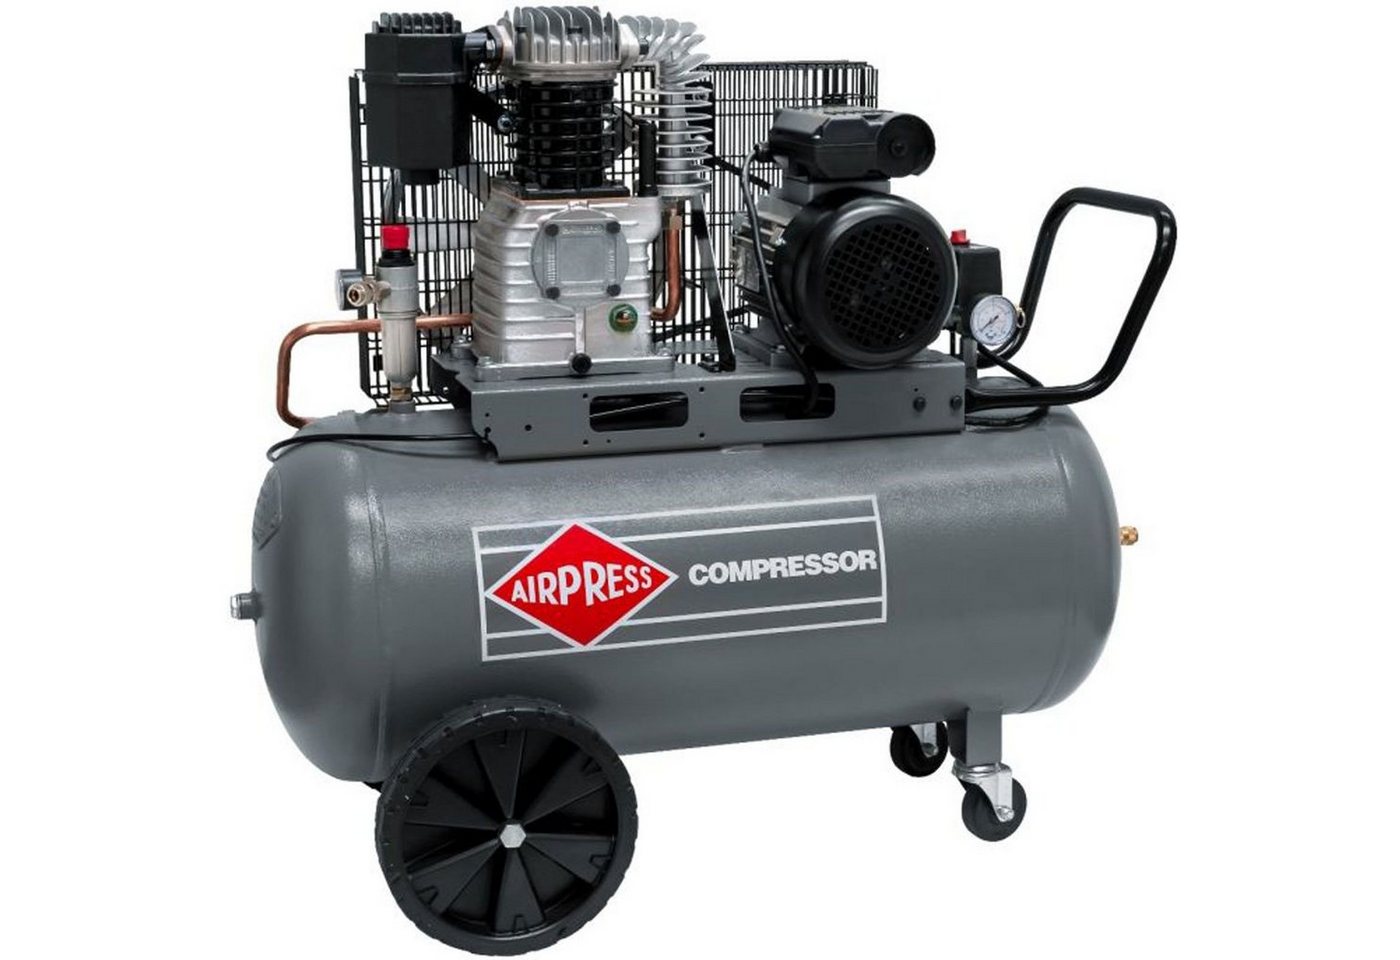 Airpress Kompressor Druckluft- Kompressor 3,0 PS 100 Liter 10 bar HL 425-100 Typ 360566, max. 10 bar, 100 l, 1 Stück von Airpress